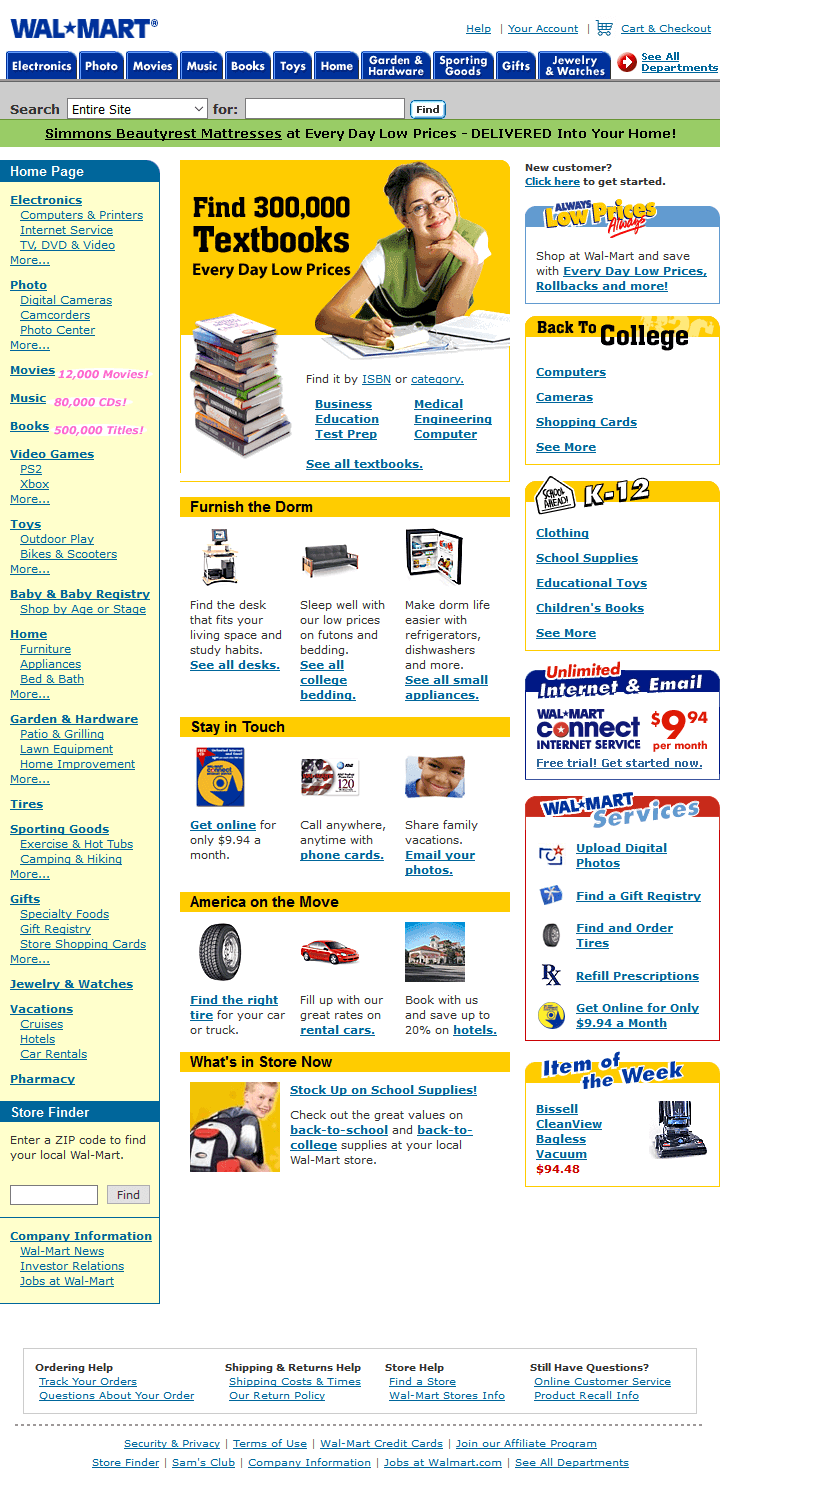 Walmart in 2002